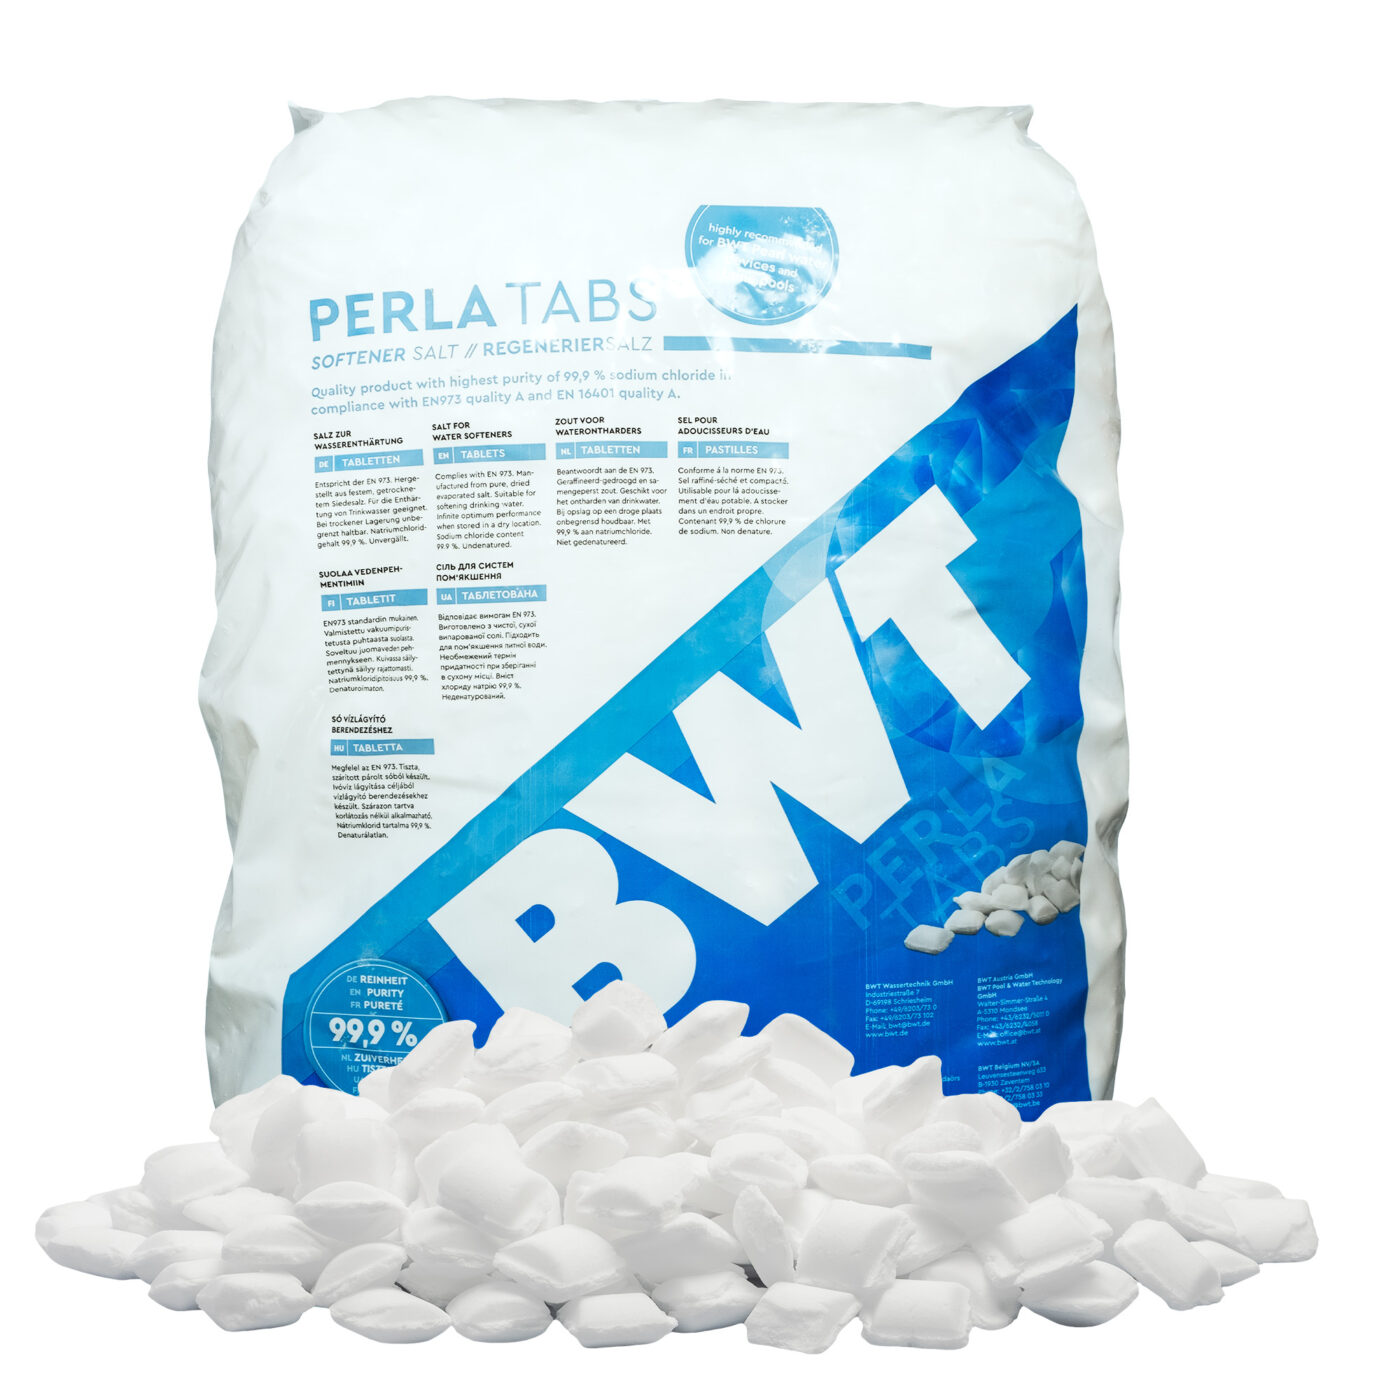 BWT Perla Tabs (Clarosal) - Tablettázott regeneráló só 25 kg - Water  softener accessories - EURO-VET Webshop